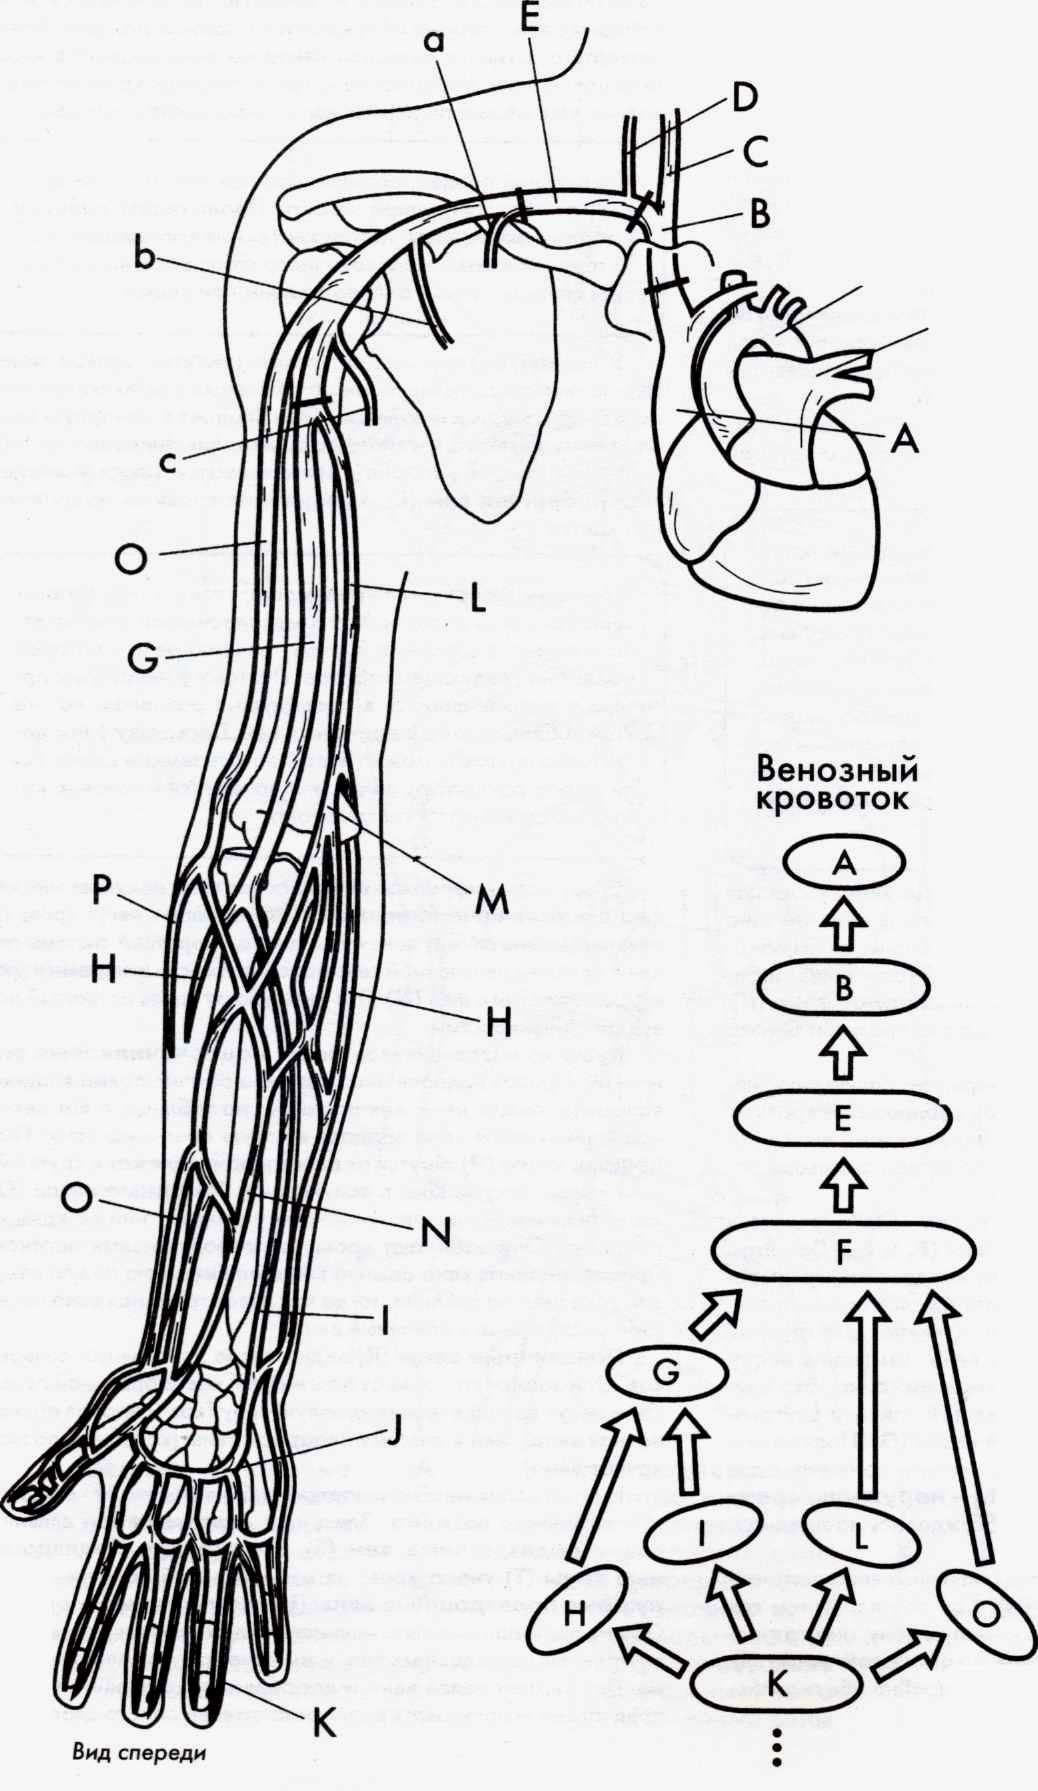 Кровообращение верхней конечности. Верхняя конечность Вена анатомия. Вены верхней конечности анатомия схема. Схема венозного кровотока верхней конечности. Локтевая Вена анатомия.